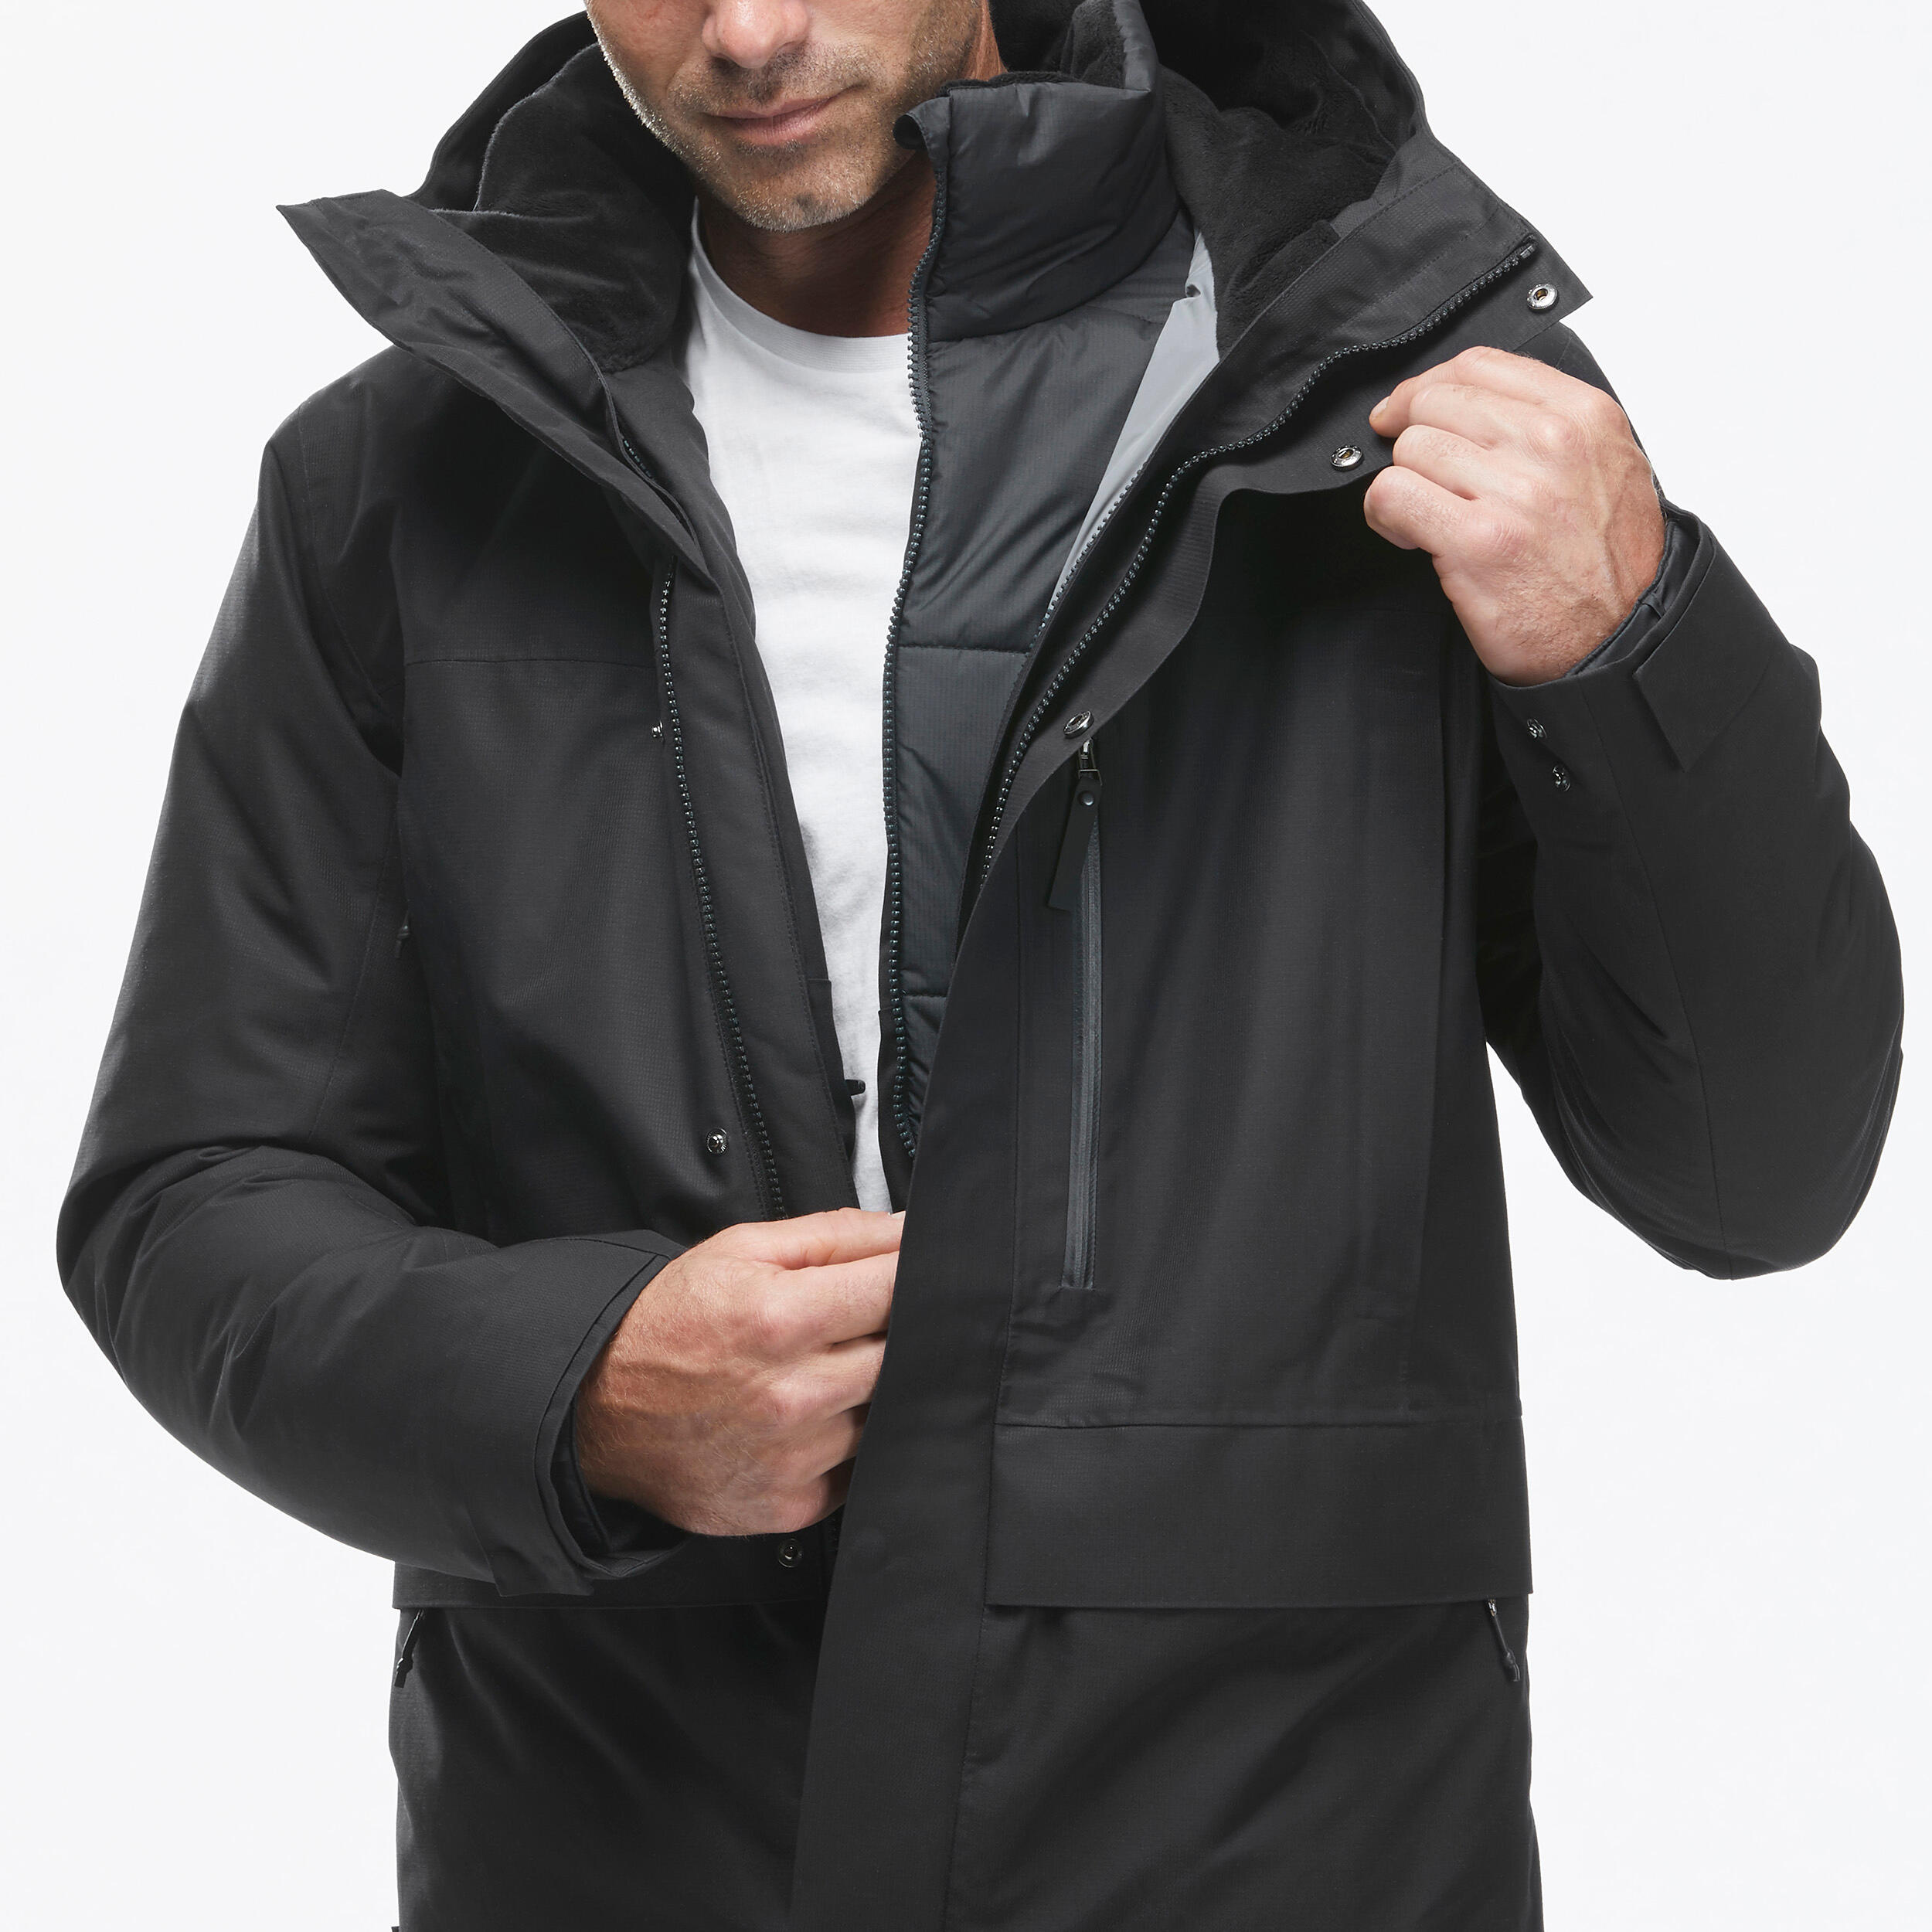 Men's 3-in-1 Waterproof Travel Trekking Jacket Travel 900 Warm -15°C - black  4/20